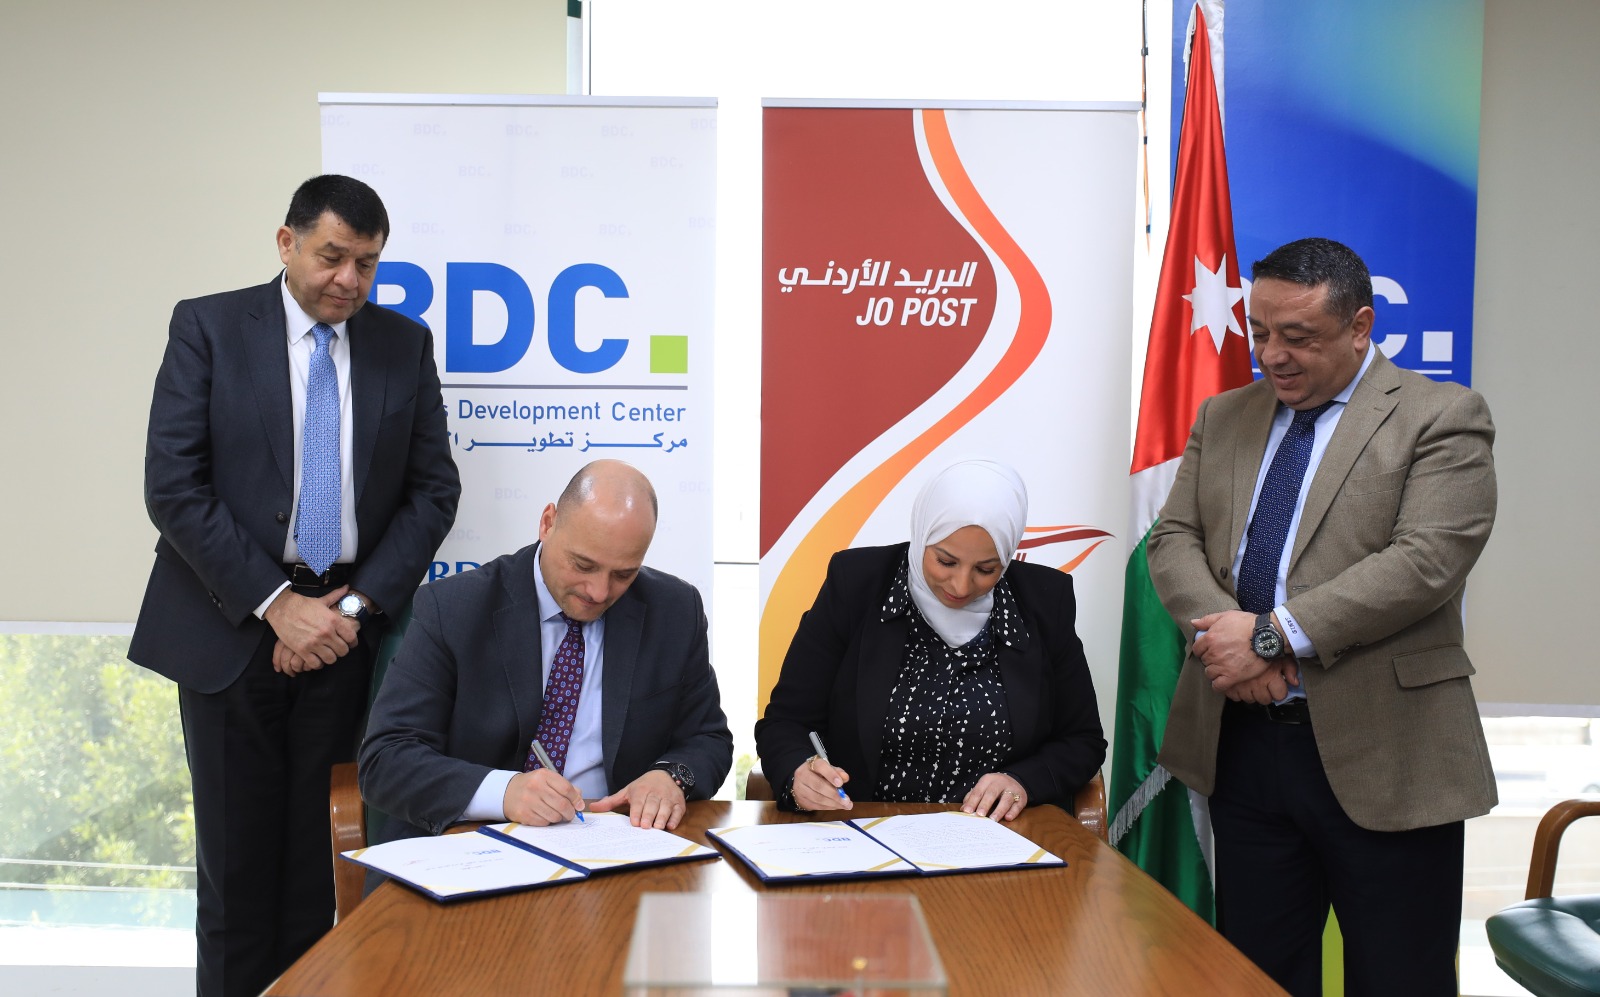 مركز تطوير الاعمال  BDC والبريد الأردني يطلقان حزمة من الخدمات لتمكين الشباب الأردني